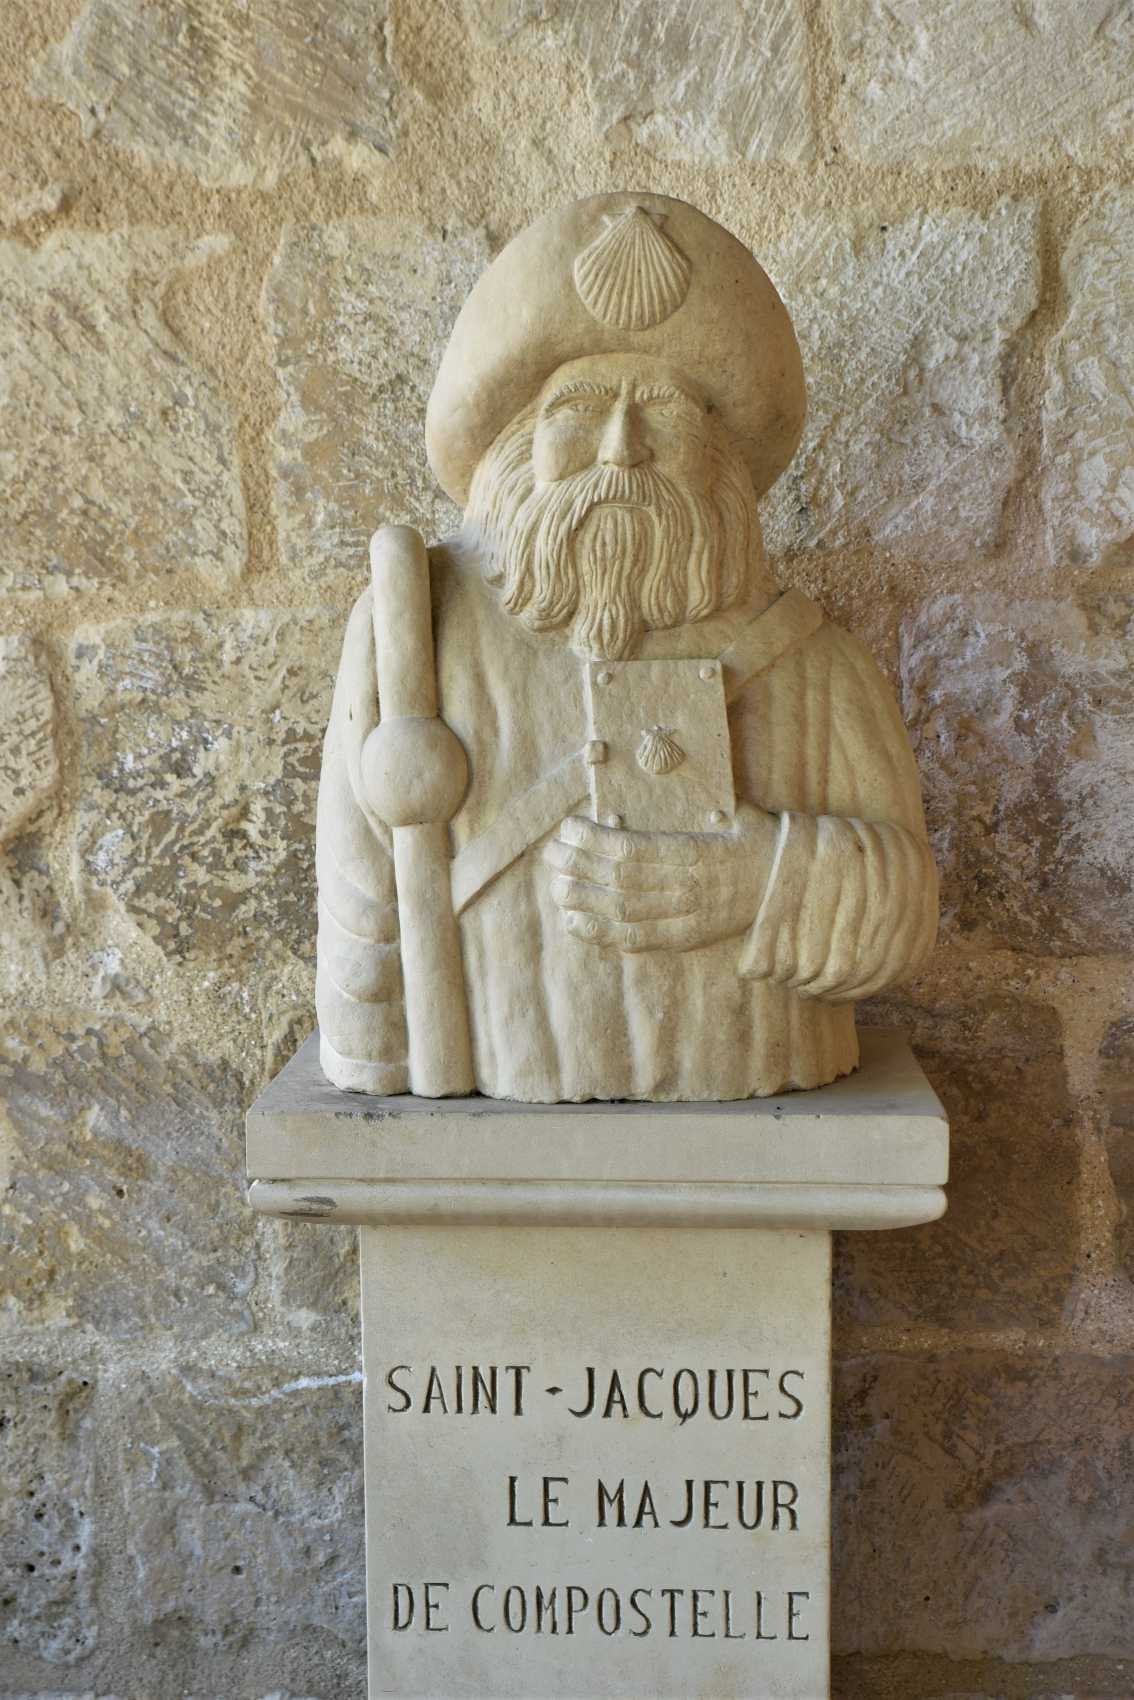 Saint-Jacques le Majeur